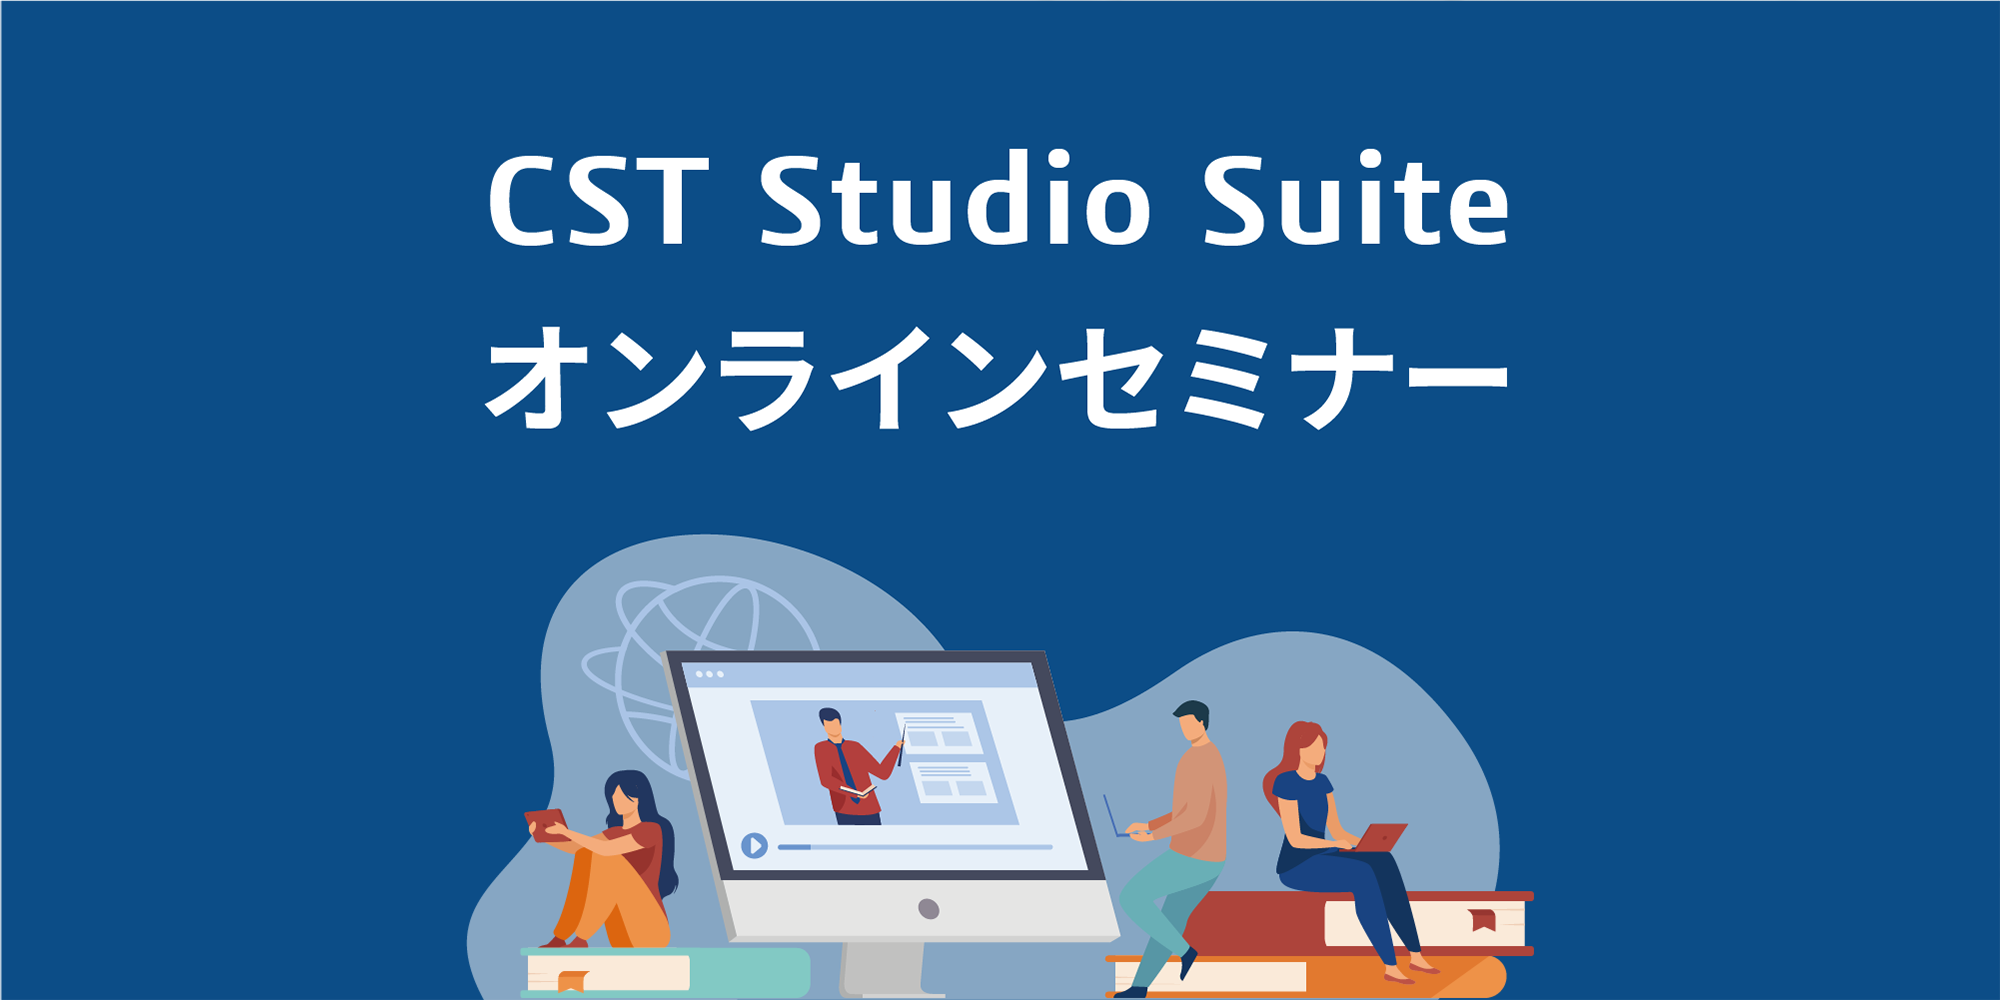 CST Studio Suite オンラインセミナー